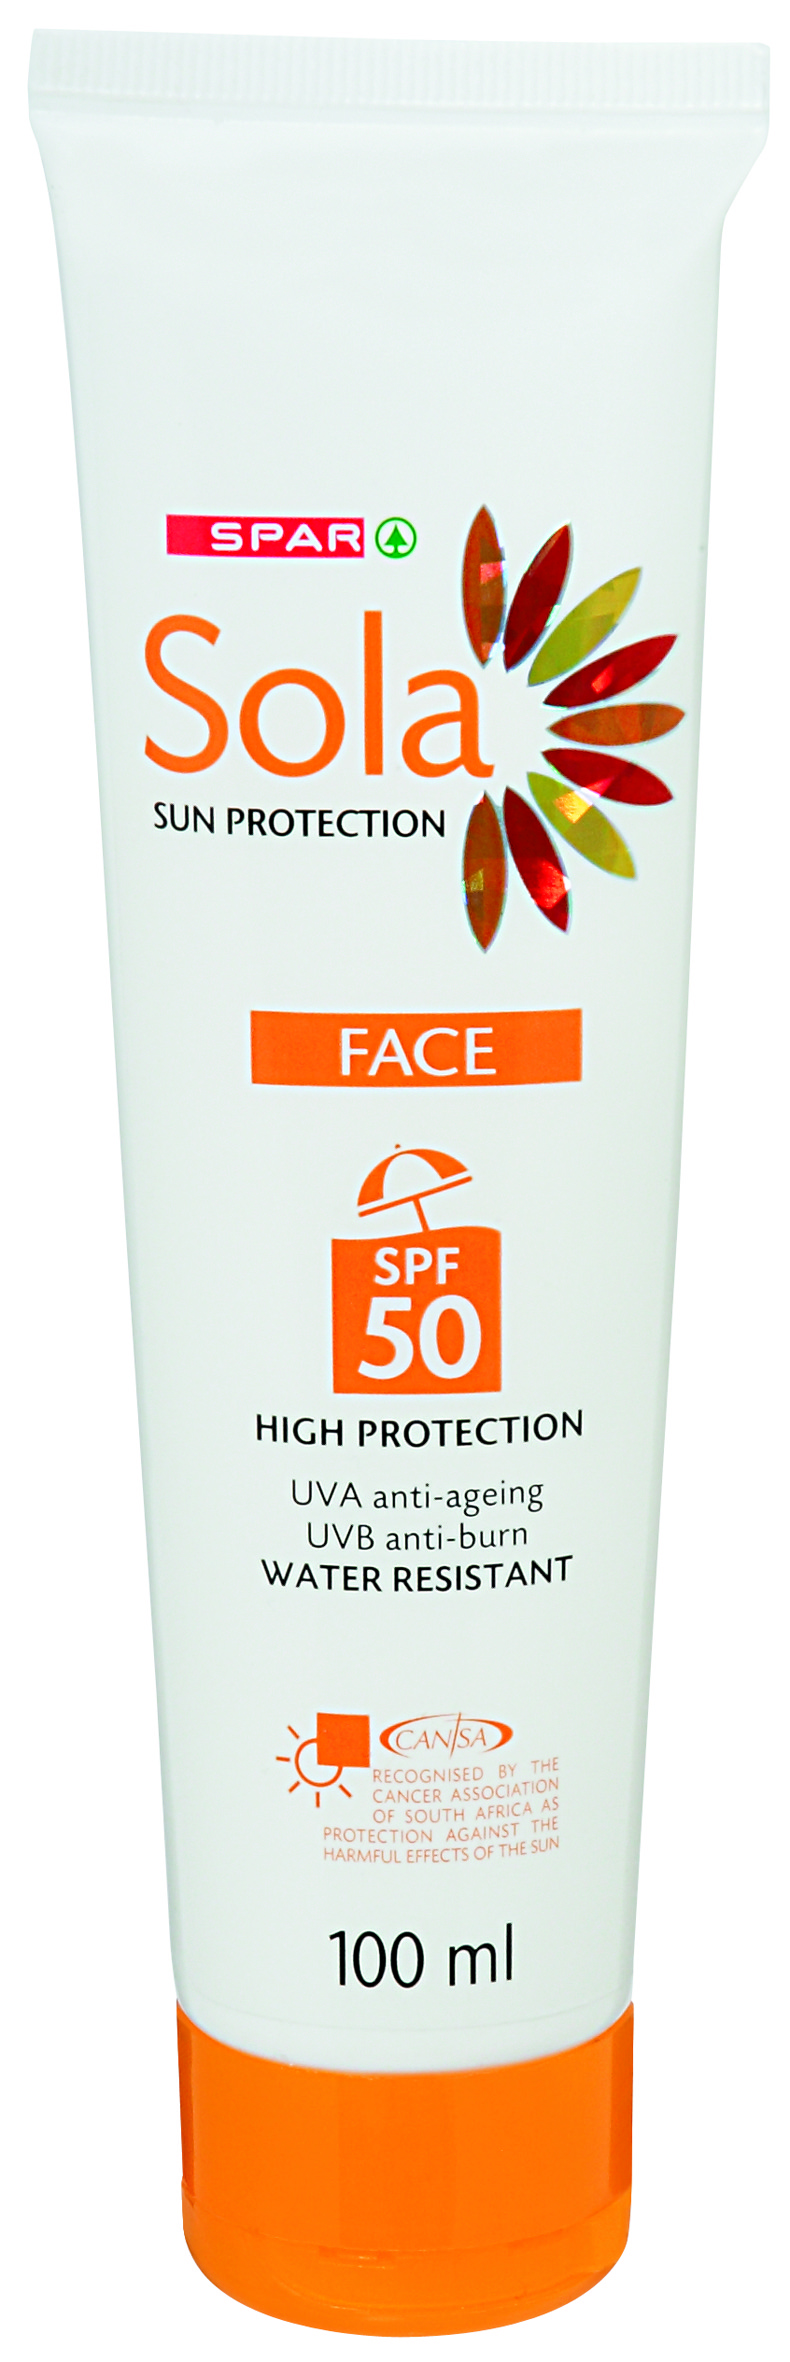 sola sun protection face cream spf 50